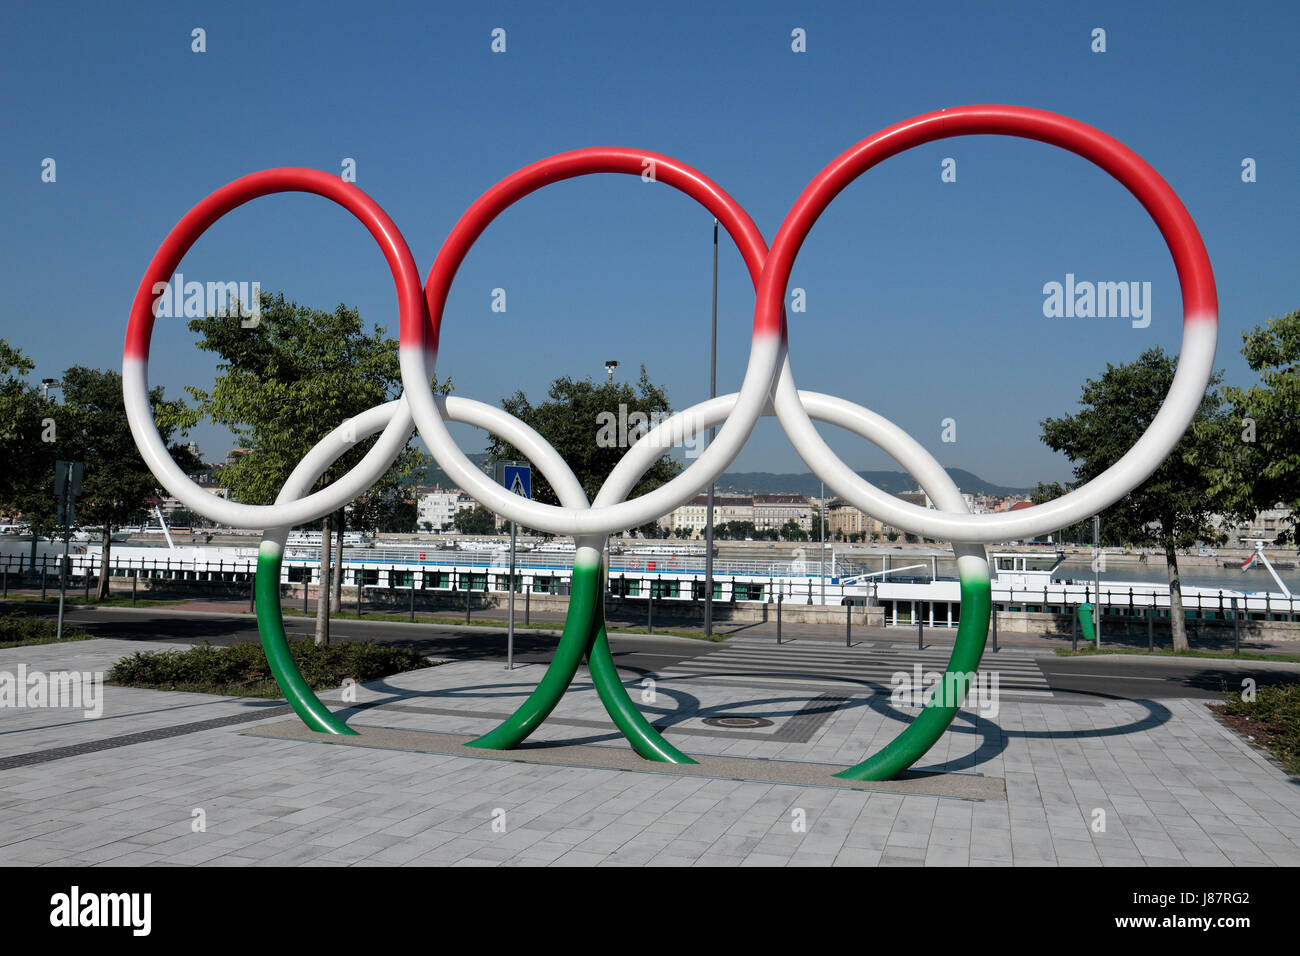 Gli anelli olimpici dipinto in la bandiera ungherese colori (Budapest offerta fro 2024 giochi) accanto al fiume Danubio a Budapest, Ungheria. Foto Stock